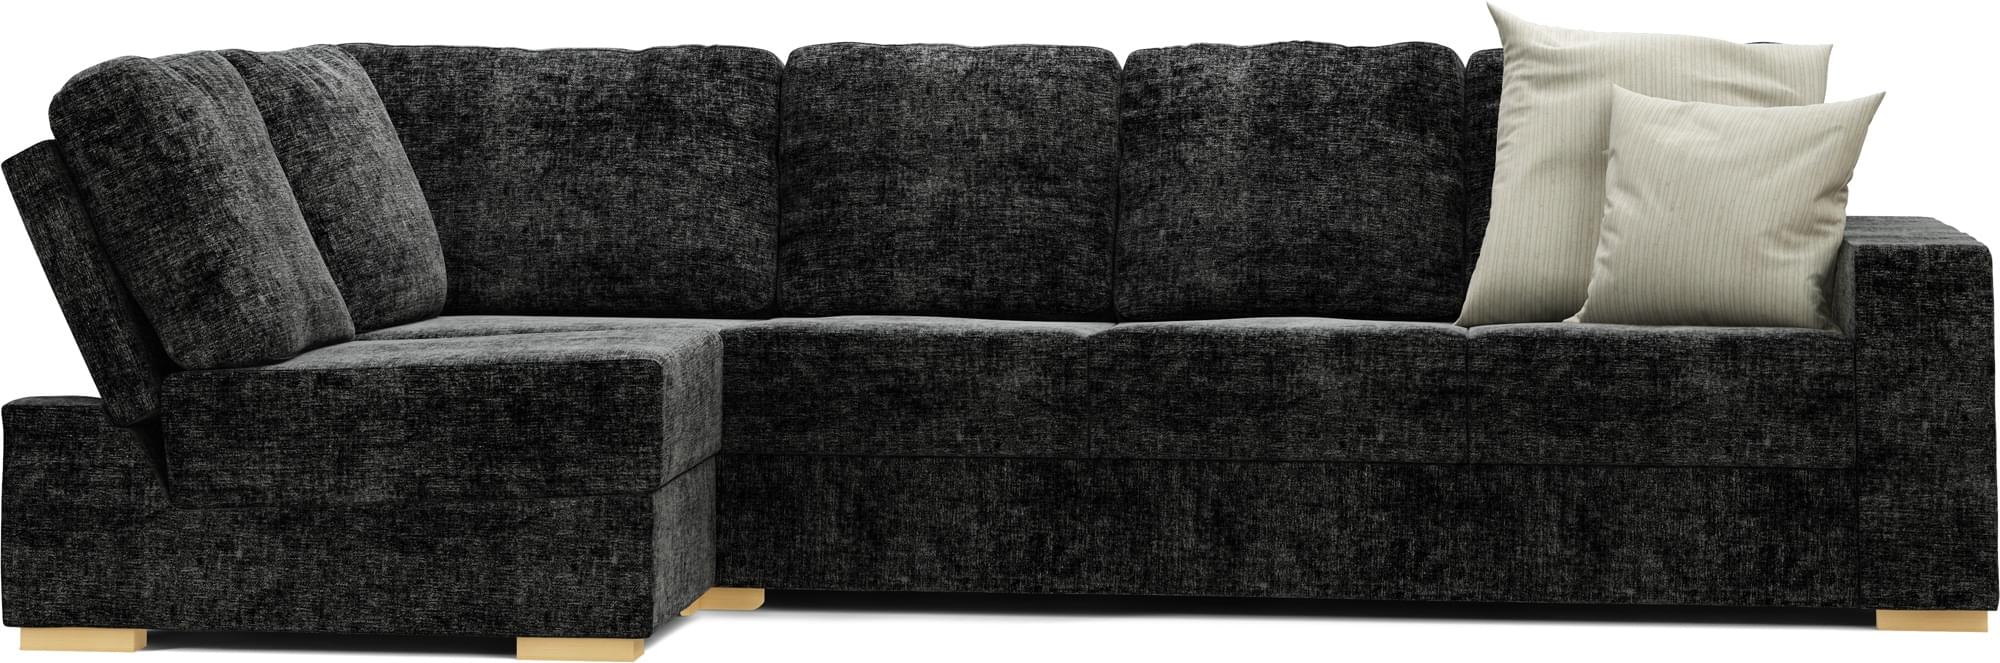 Lear Armless 4X2 Double Sofa Bed